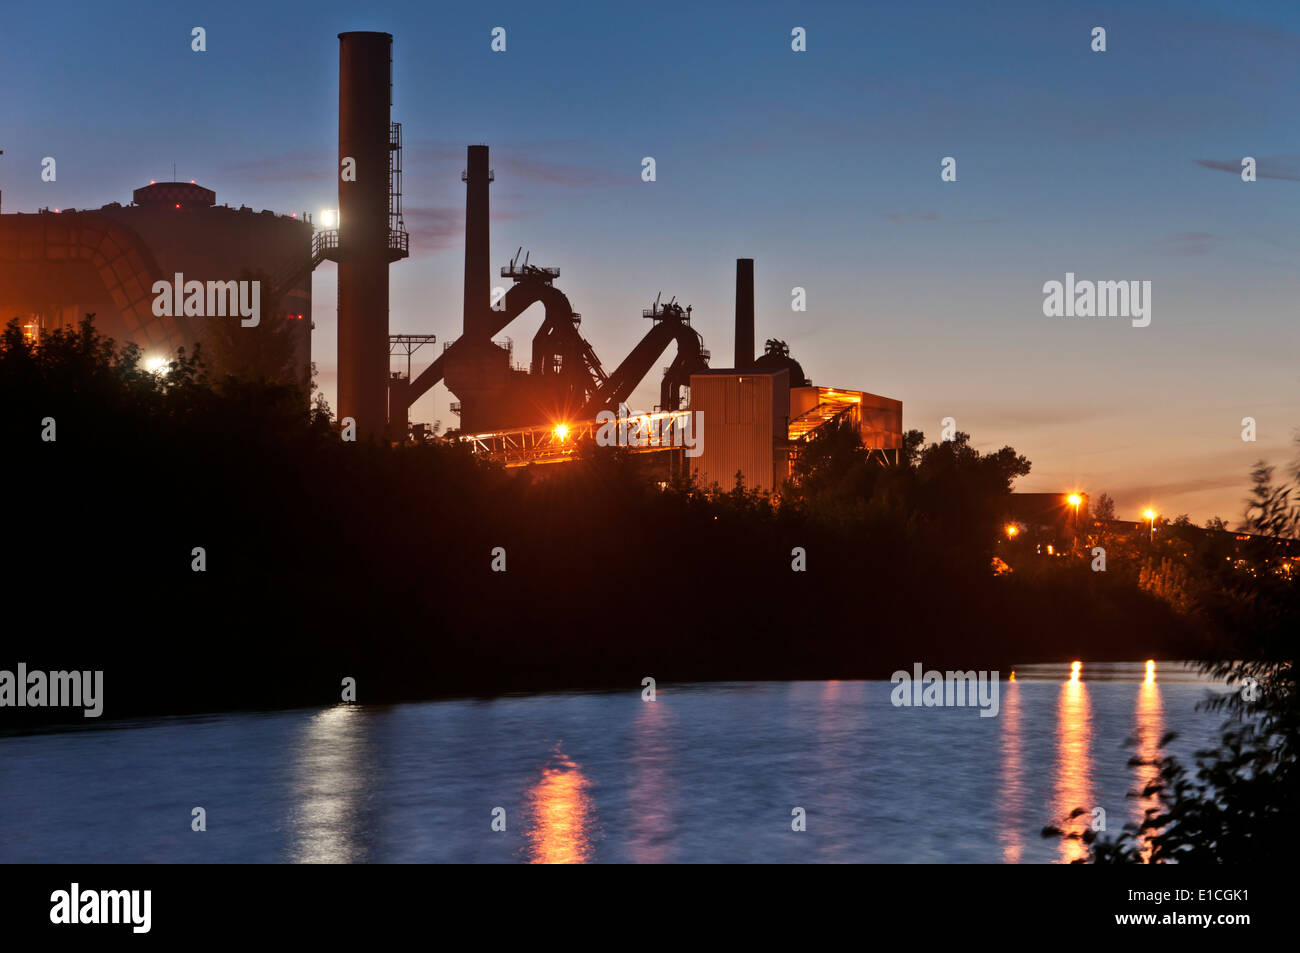 Des installations industrielles de l'industrie sidérurgique à la réflexion de l'eau nuit Banque D'Images